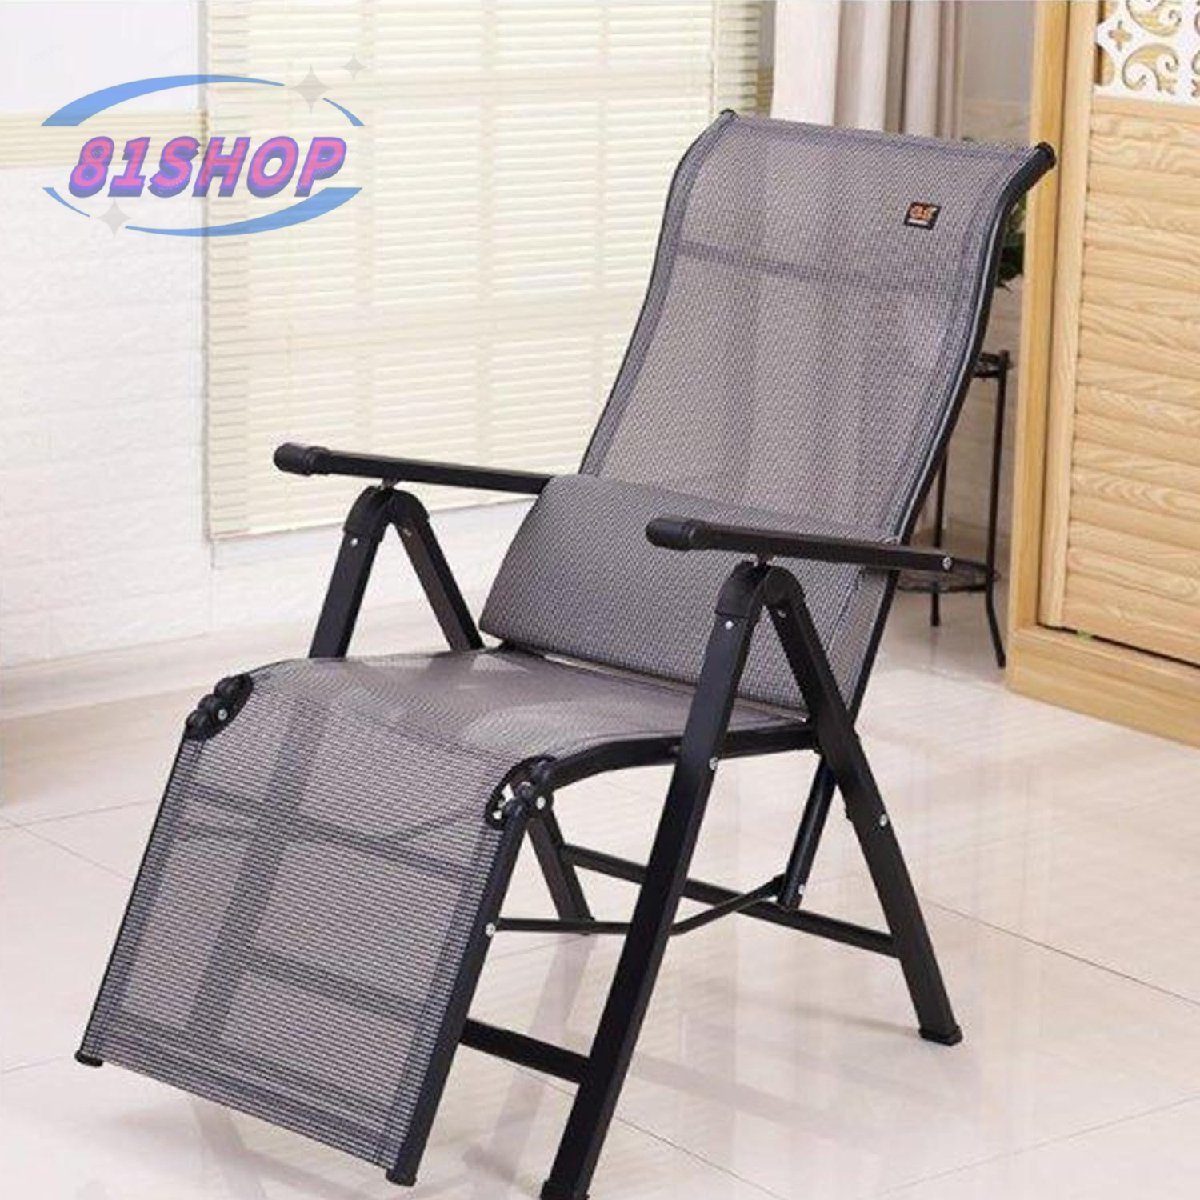 81SHOP Lounge chair, nap chair, deck chair, office lunch break chair, home chair, folding beach chair, Handmade items, furniture, Chair, Chair, chair